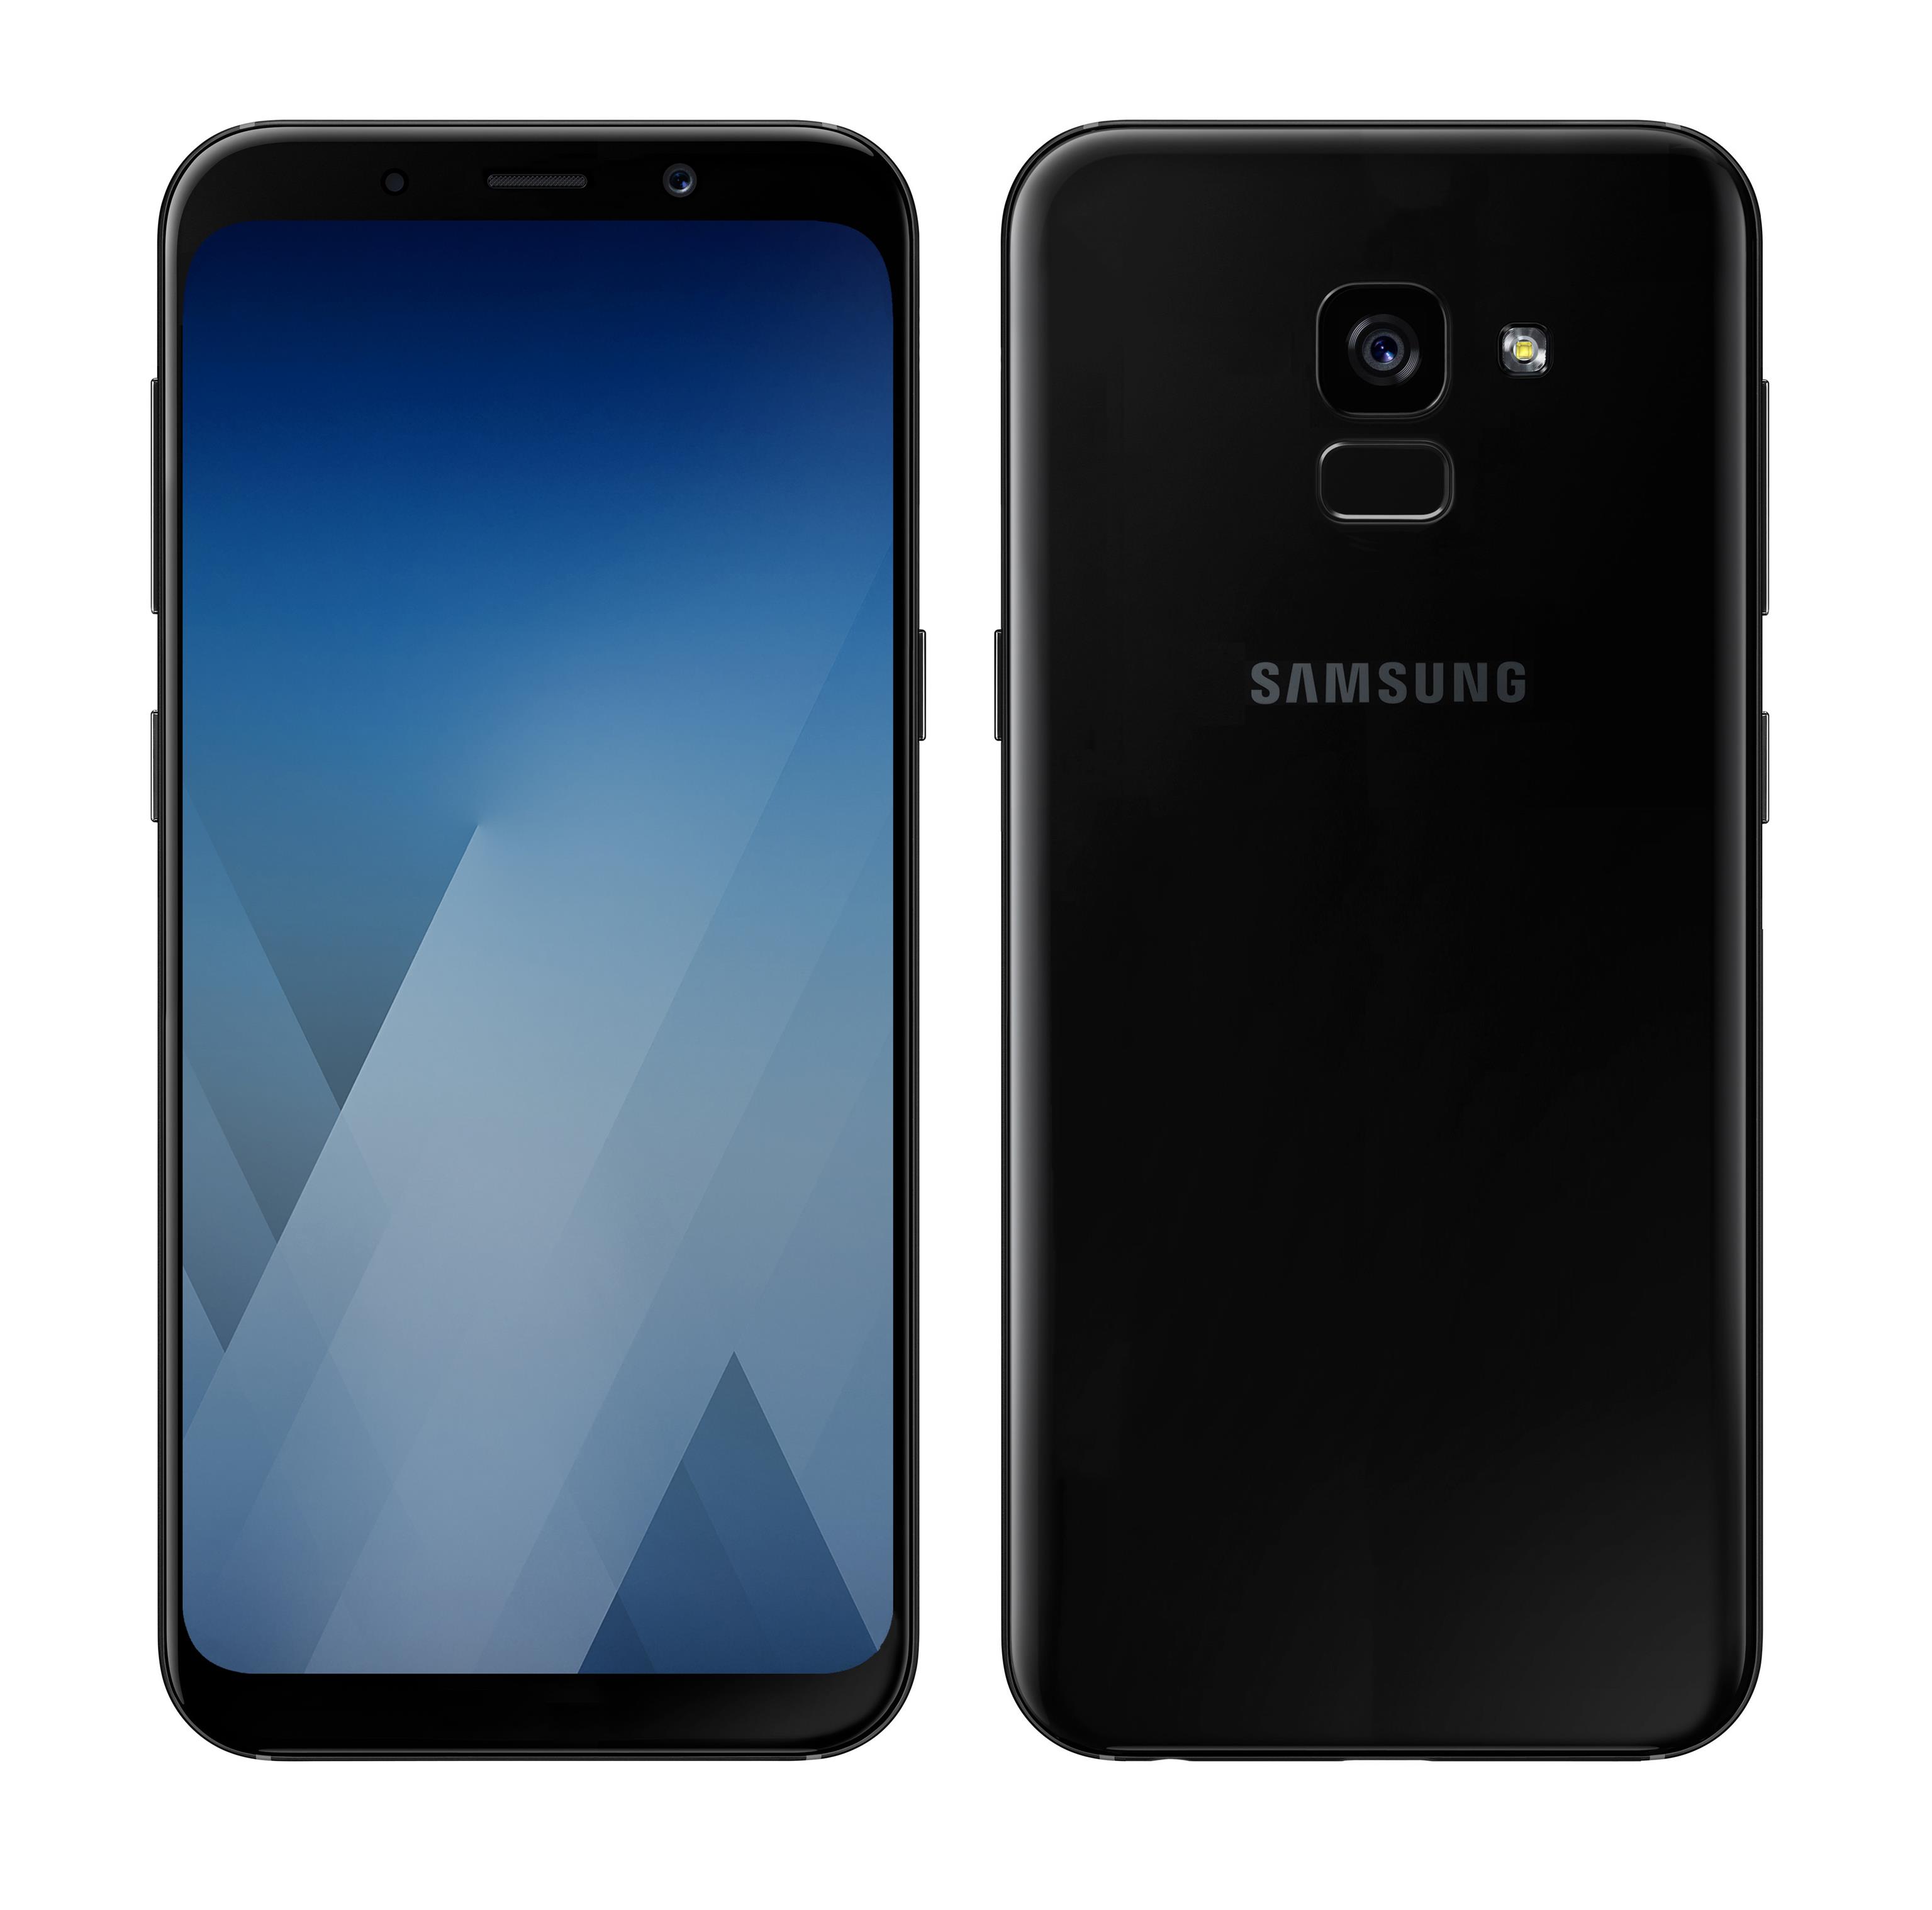 Samsung Galaxy A5 2018 concept